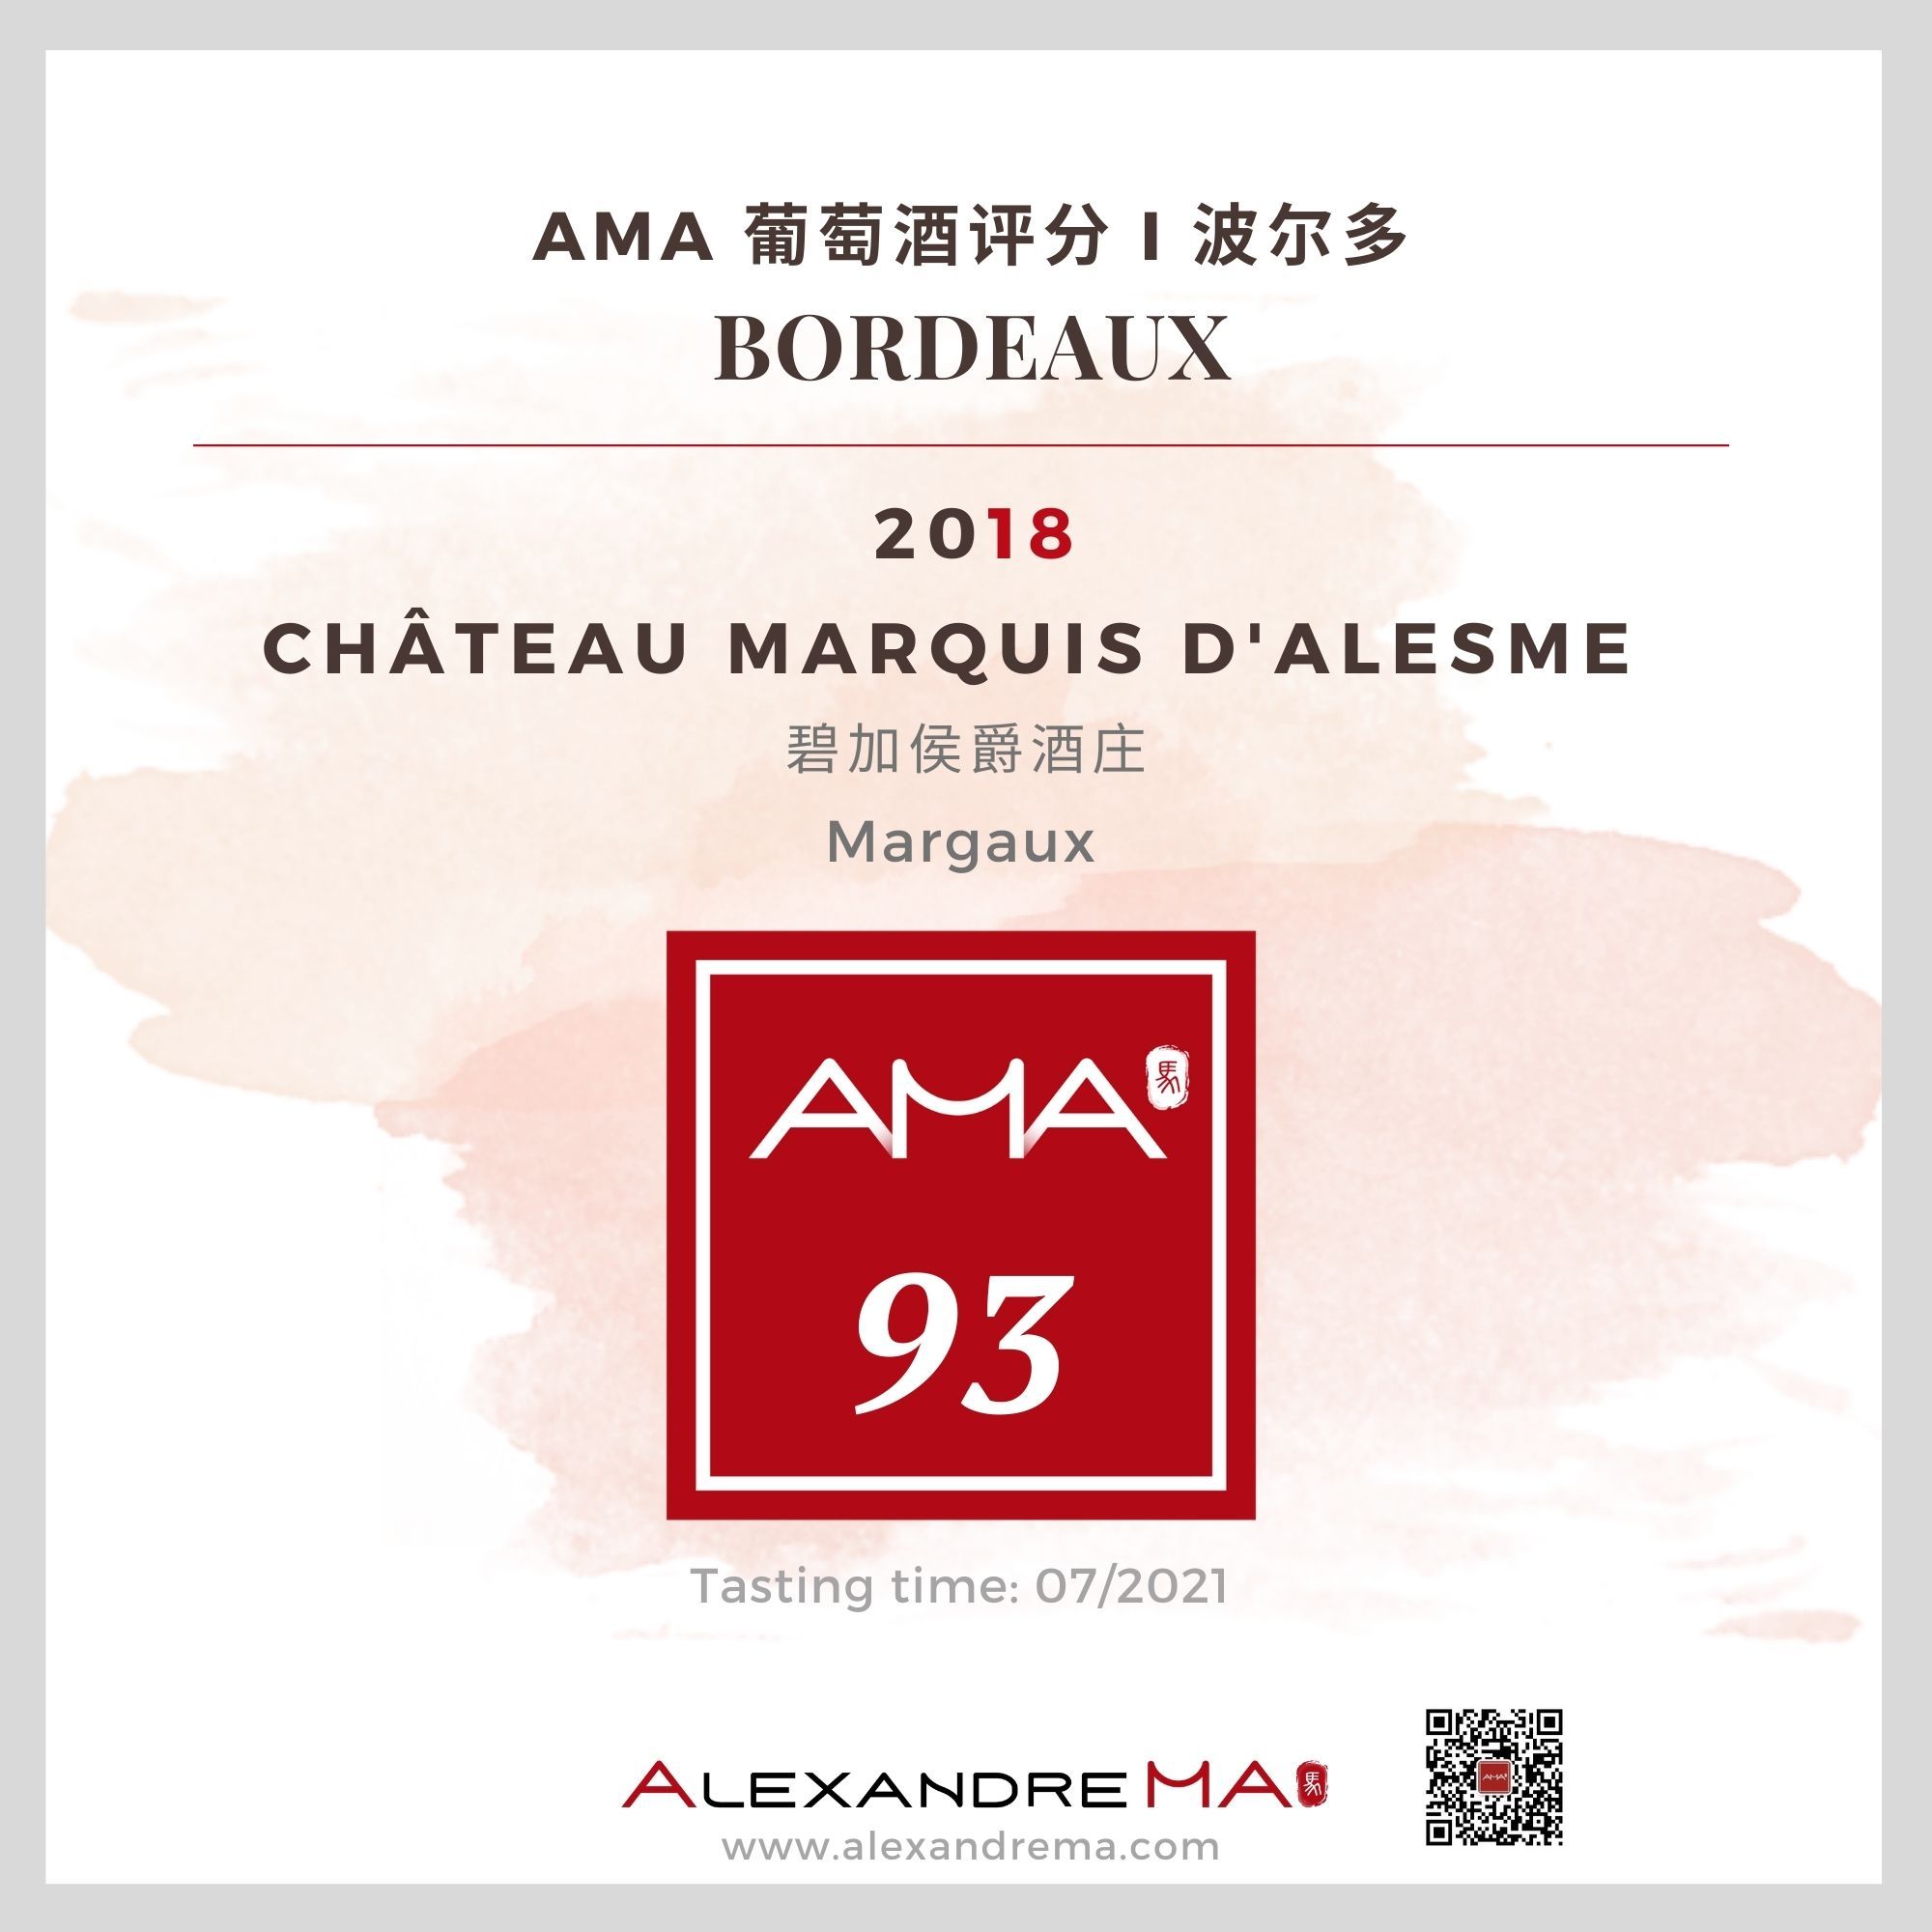 Château Marquis d’Alesme 2018 碧加侯爵酒庄 - Alexandre Ma